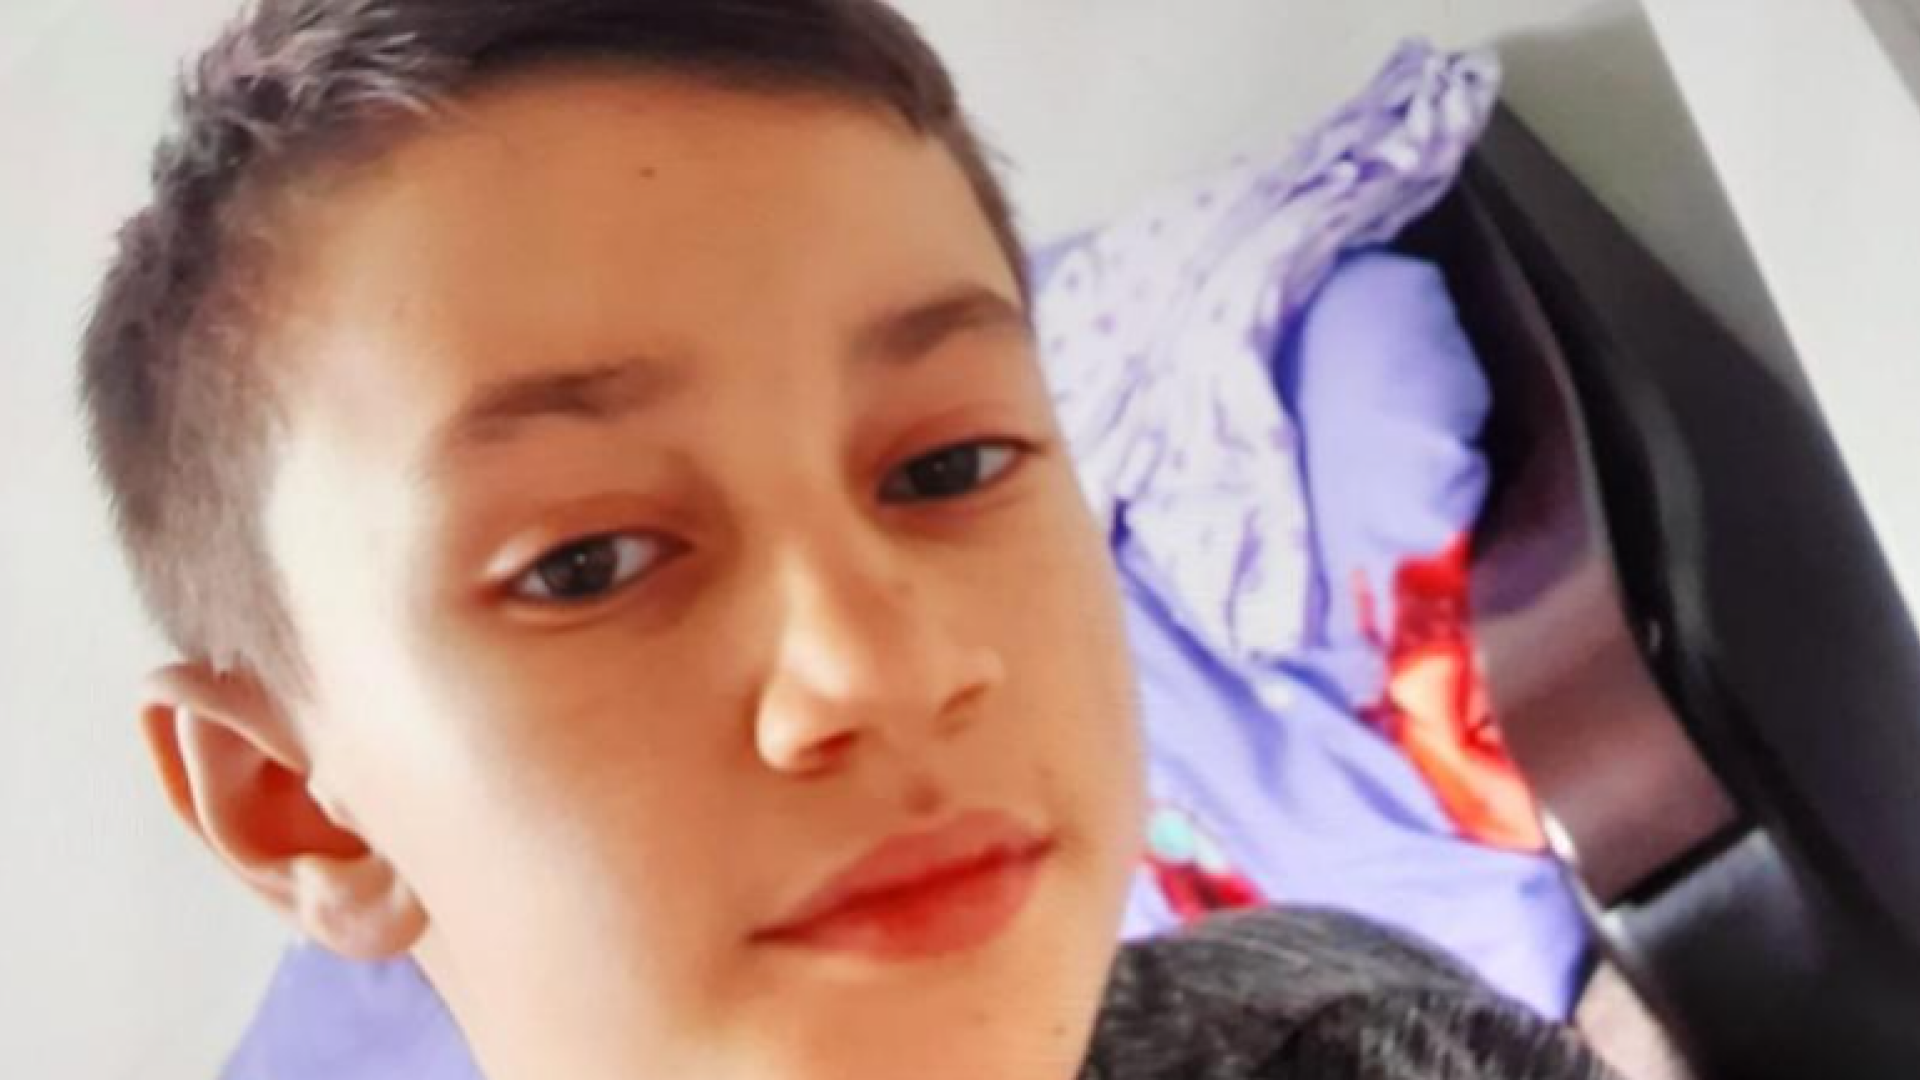 Băieţel de 12 ani din Botoșani, dat dispărut. A plecat la şcoală şi nu s-a întors. Semnalmentele copilului